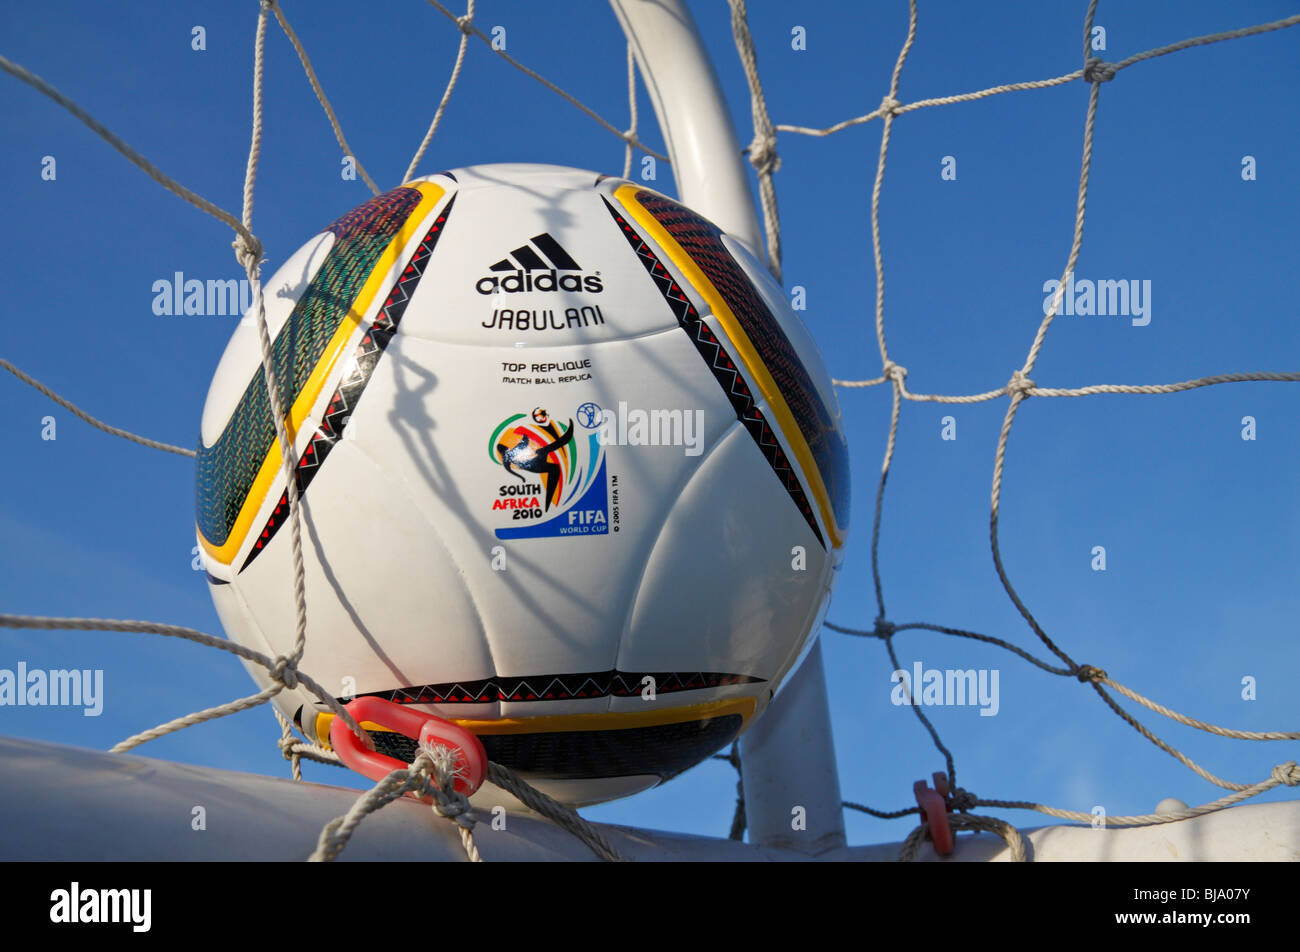 La Coupe du Monde FIFA 2010 replica match ball par Adidas, le Jabulani, dans  le coin d'un filet de football Photo Stock - Alamy